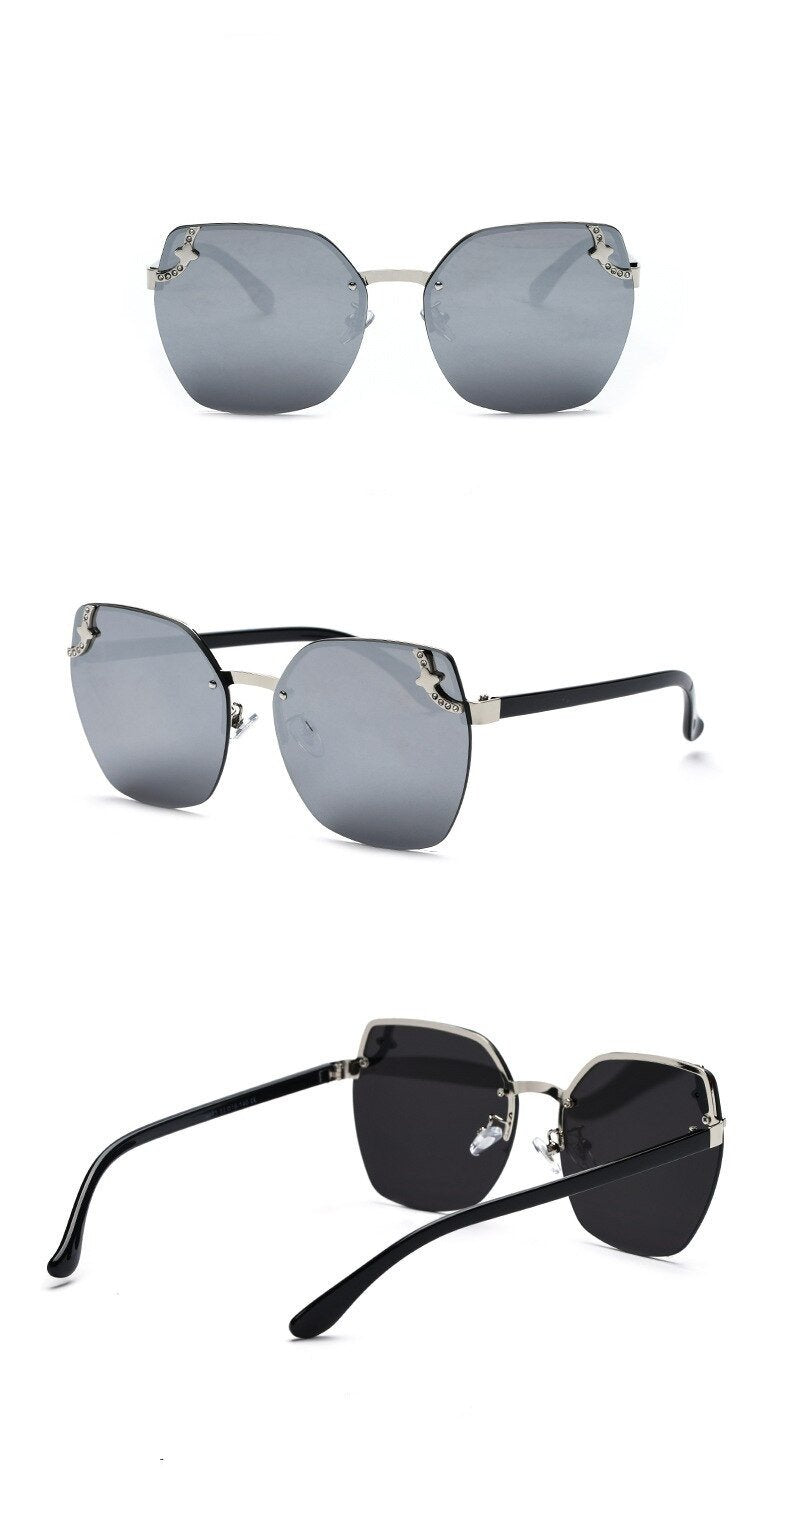 2020 New Diamond Ladies Fashion Sunglasses -Unique and Classy